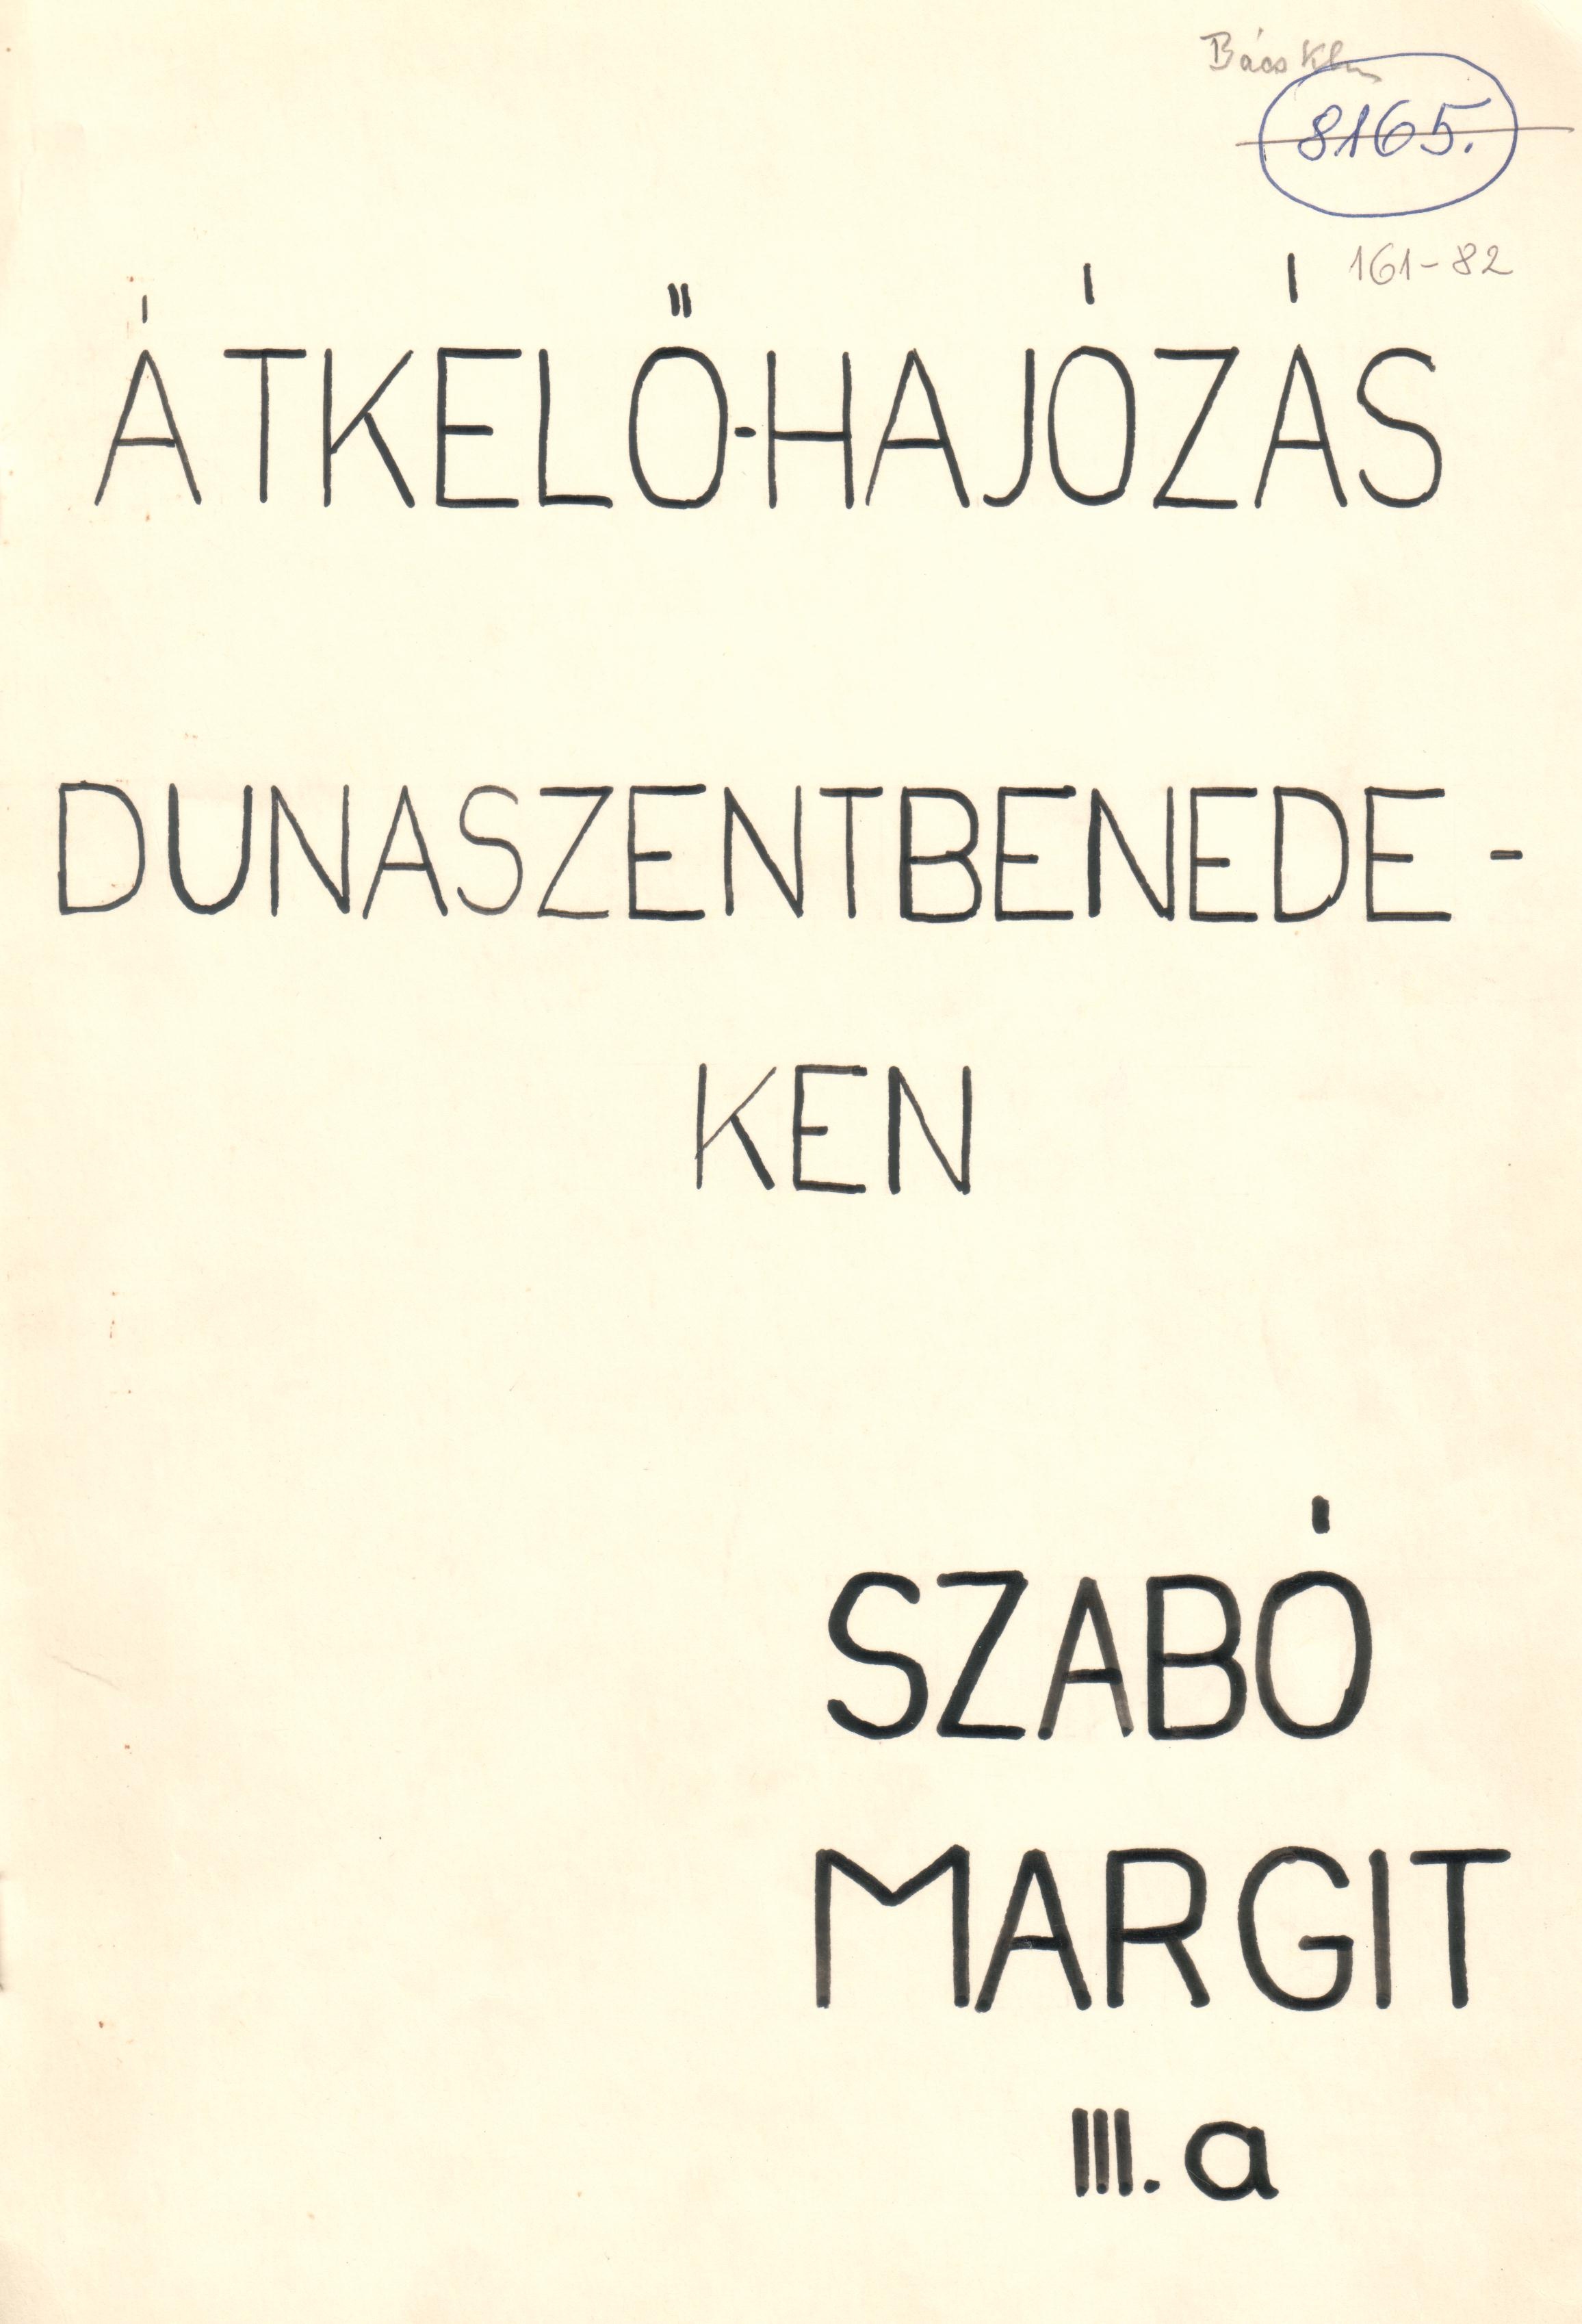 Átkelőhajózás Dunaszentbenedeken c. pályázat gépirata. (Viski Károly Múzeum Kalocsa RR-F)